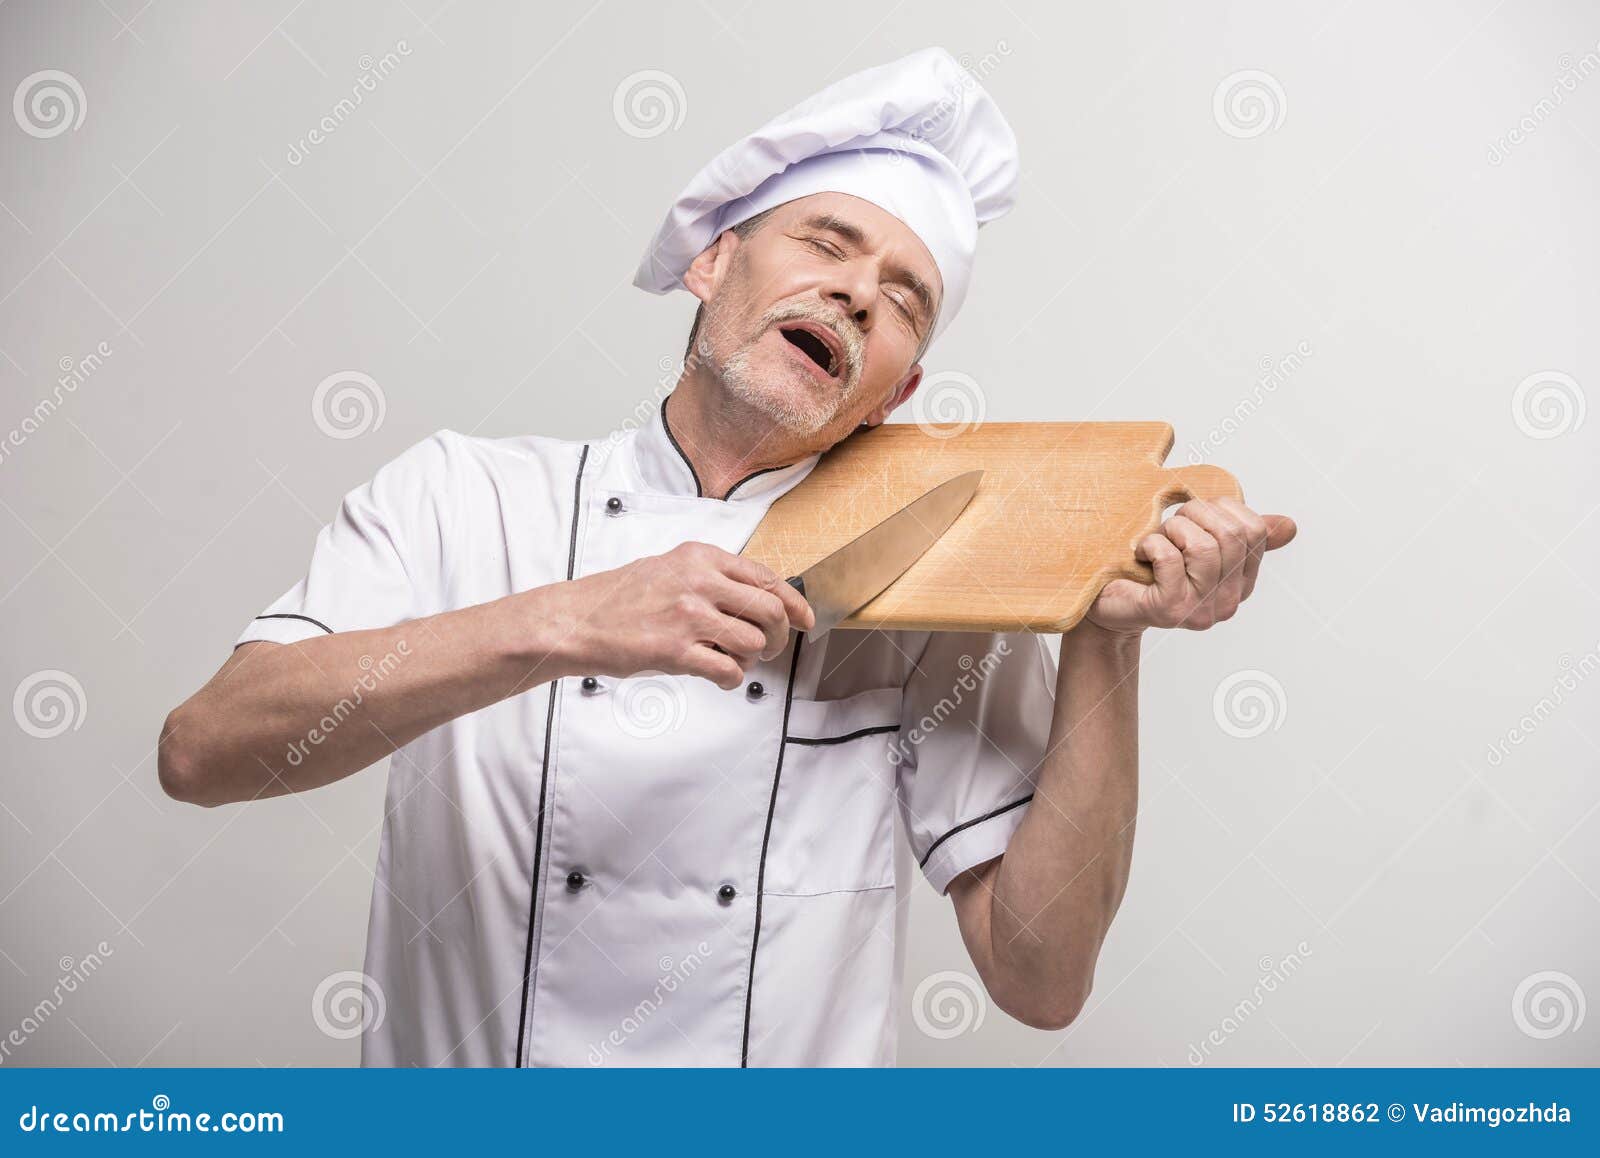 ο κύριος μάγειρας απομόνωσε το λευκό. Ανώτερος αρσενικός κύριος μάγειρας στο ομοιόμορφο μαχαίρι εκμετάλλευσης και τεμαχίζοντας πίνακας α στο γκρίζο υπόβαθρο